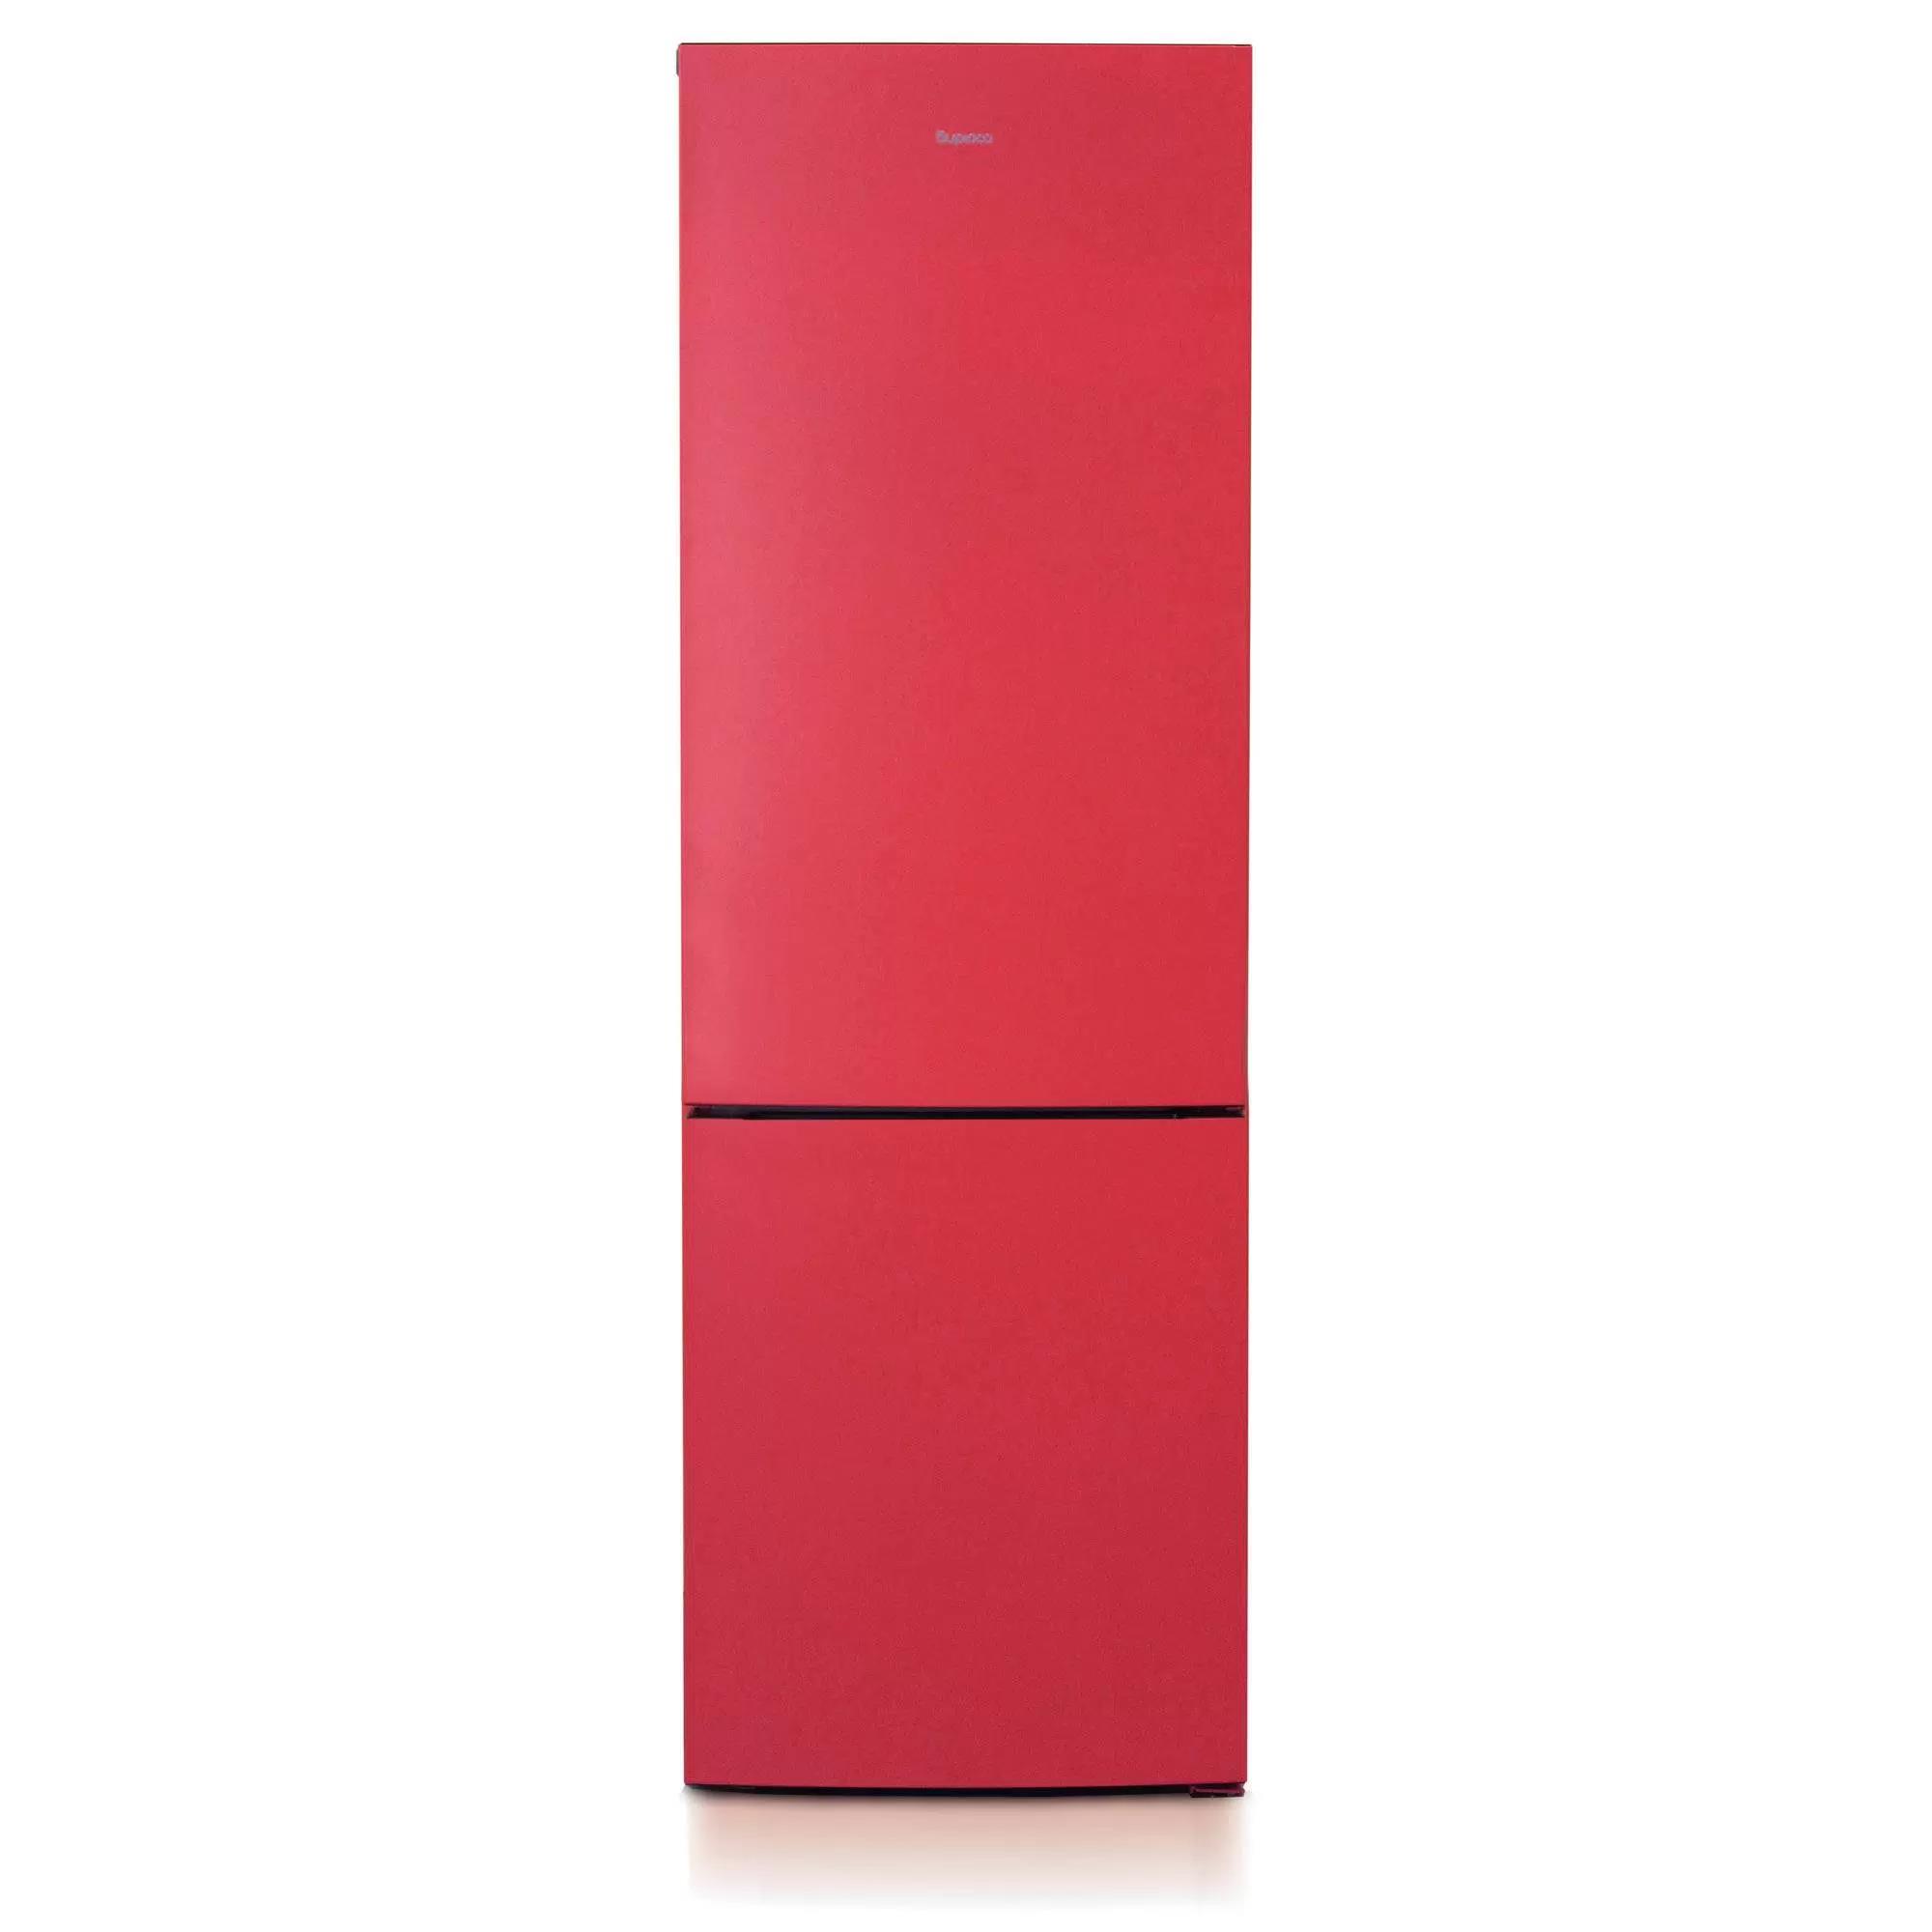 Изображение Холодильник Бирюса H6027 красный (A,324,85 кВтч/год)